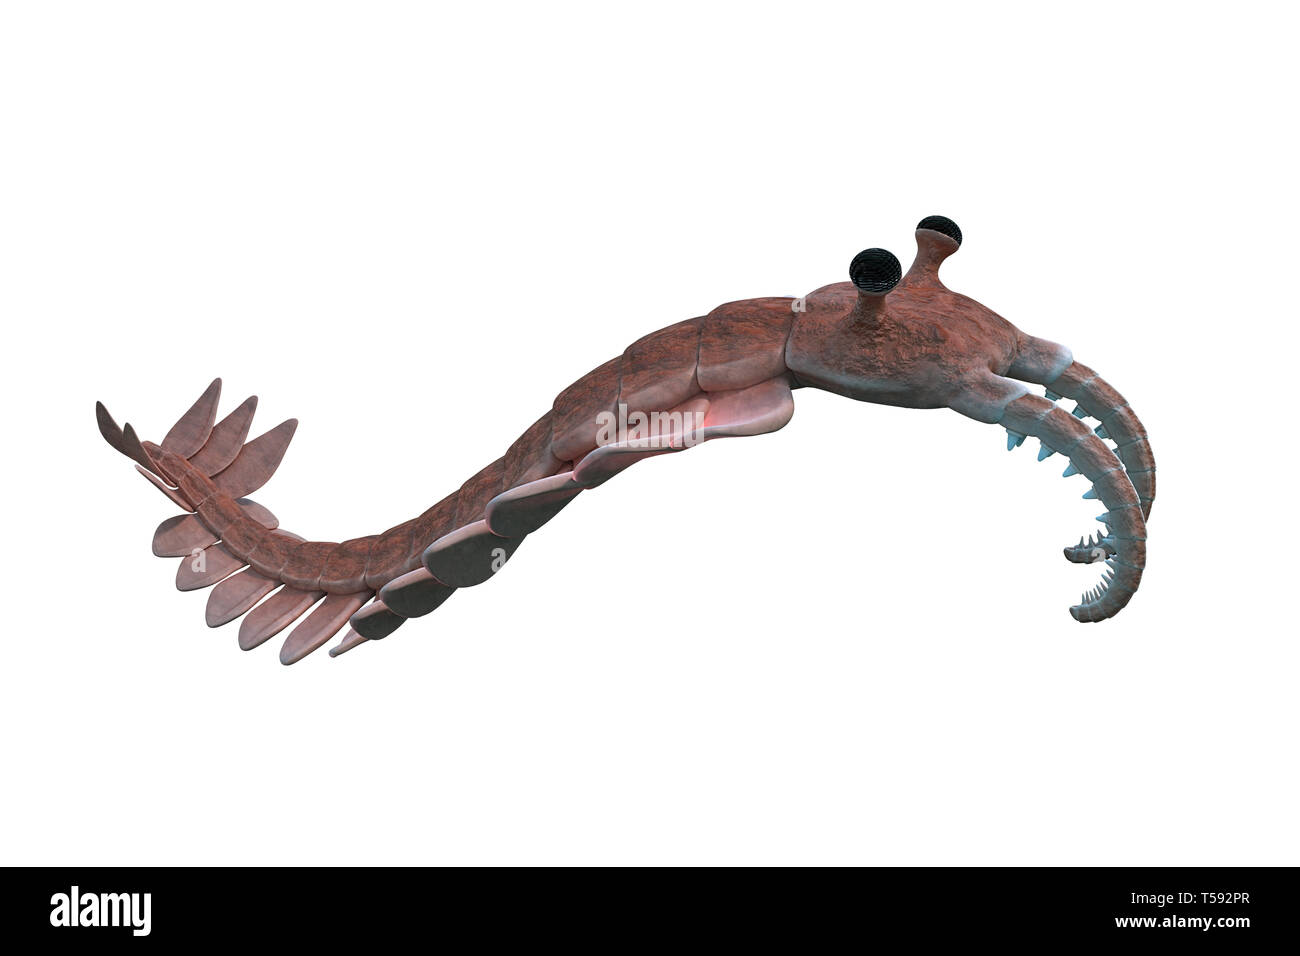 Anomalocaris, créature de la période cambrienne, isolé sur fond blanc Banque D'Images